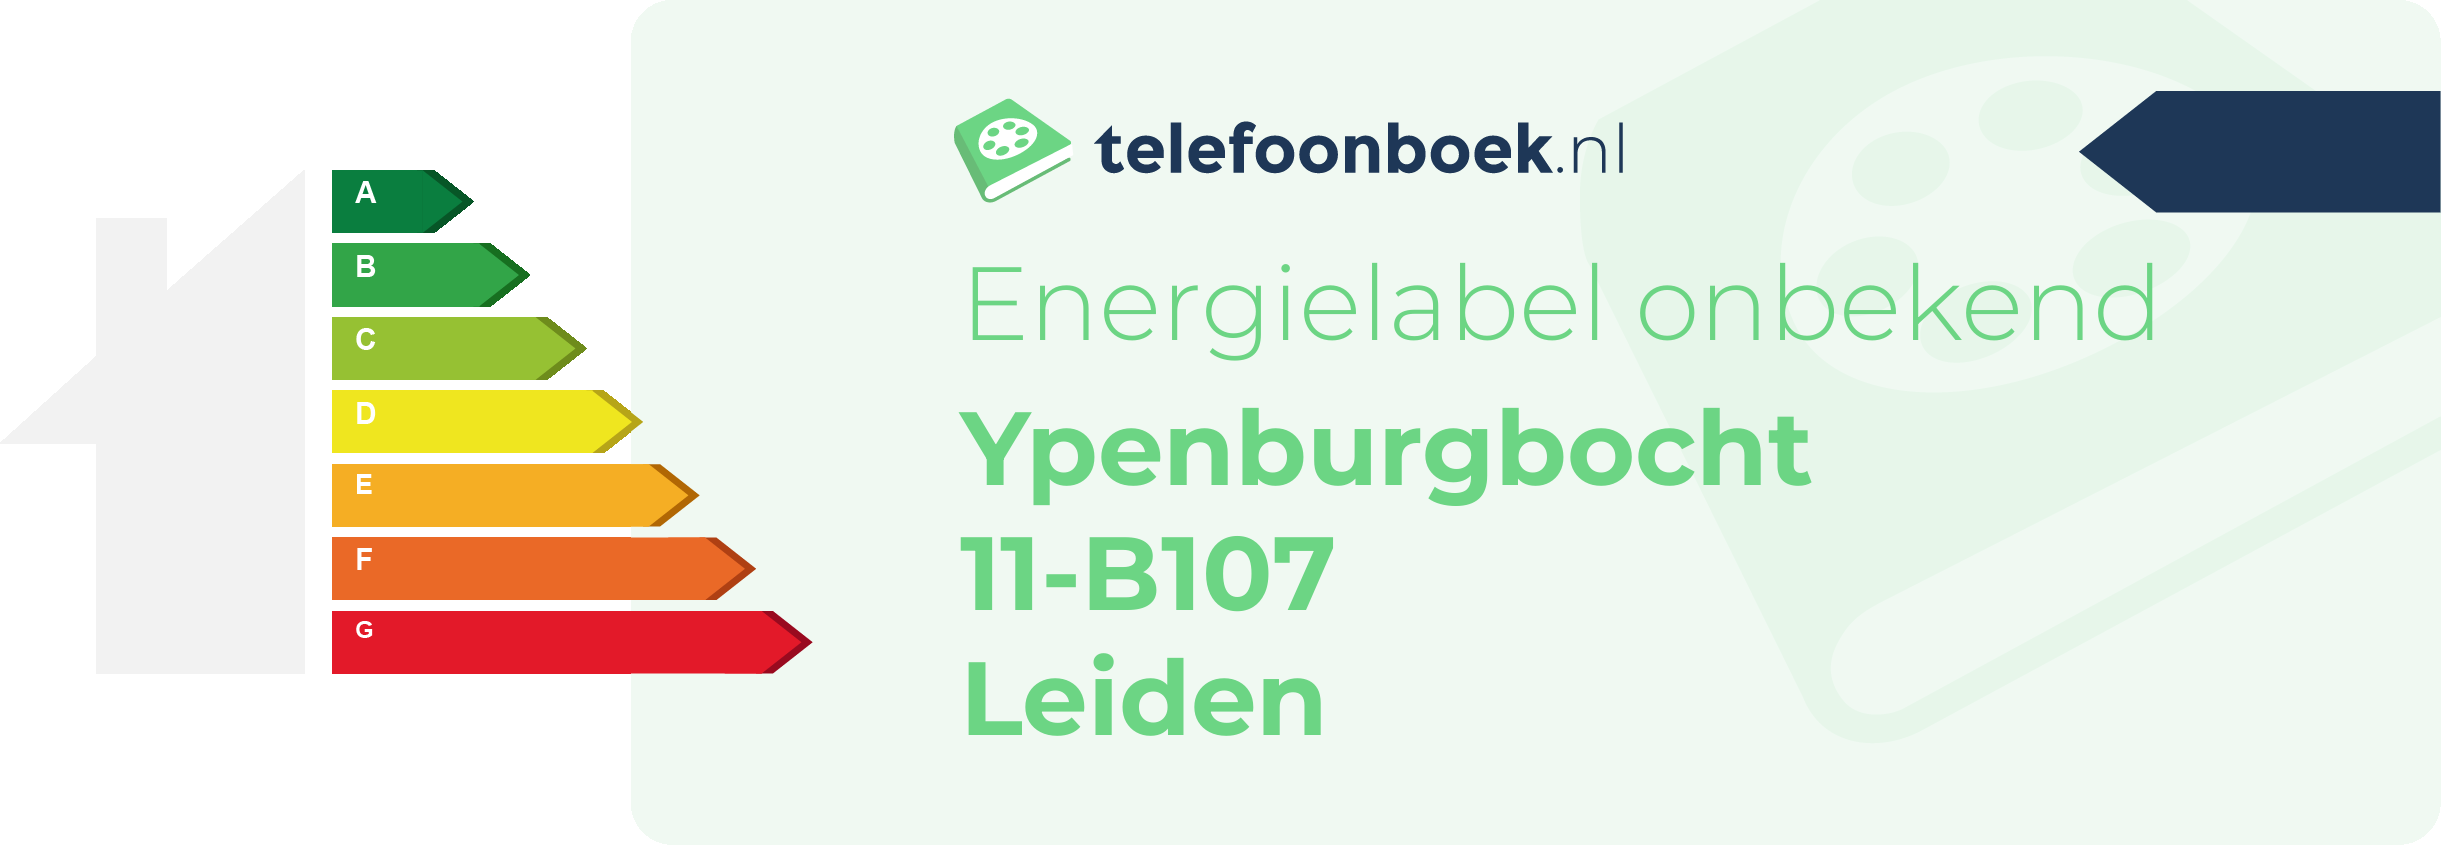 Energielabel Ypenburgbocht 11-B107 Leiden